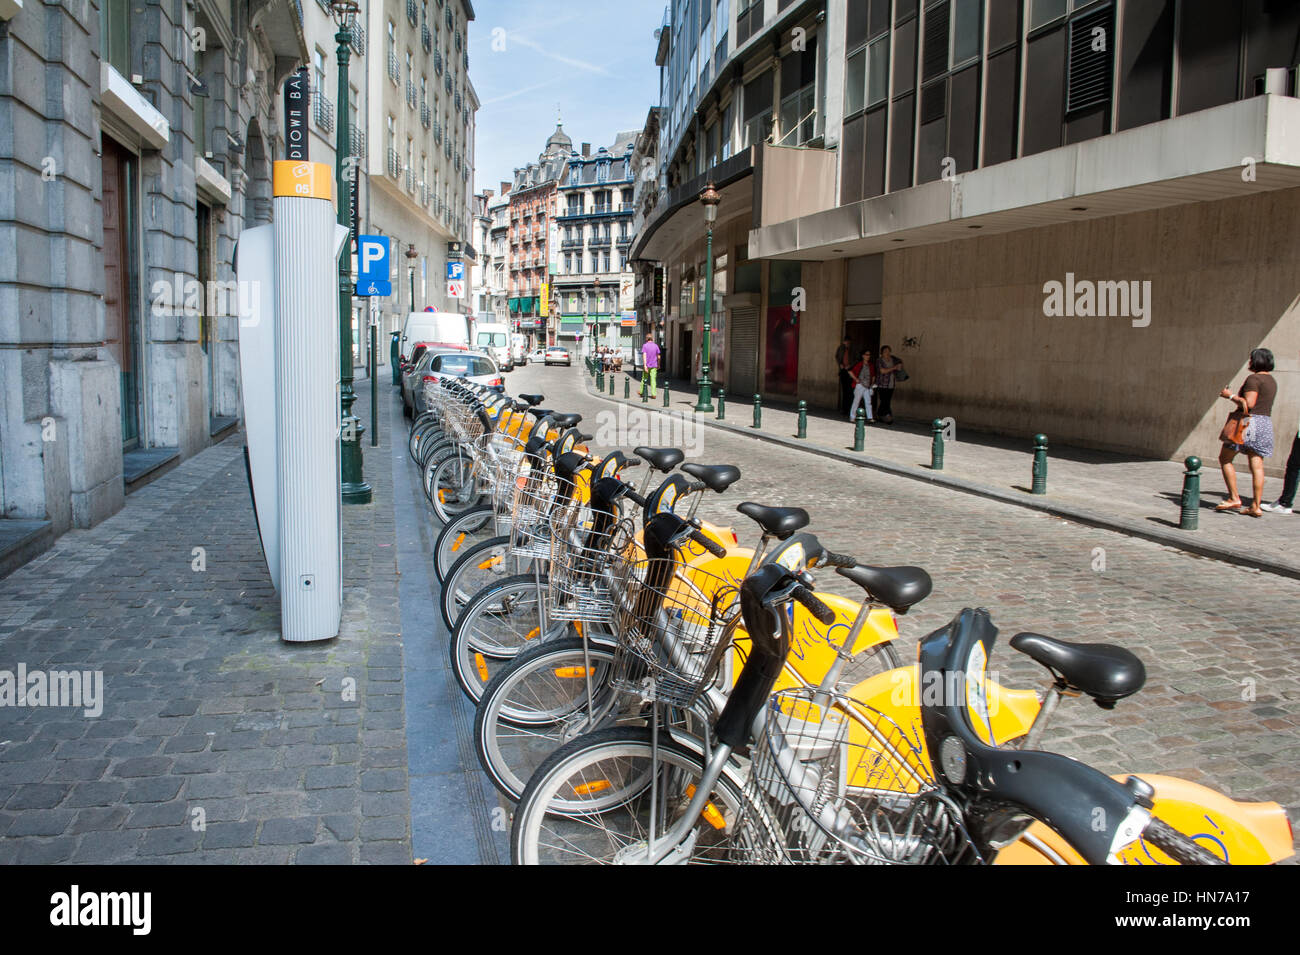 BRUXELLES, Belgien - 13. August 2012: Linie der gelben neue öffentliche Fahrräder, Transportsystem für Umwelt in der städtischen Straße Stockfoto